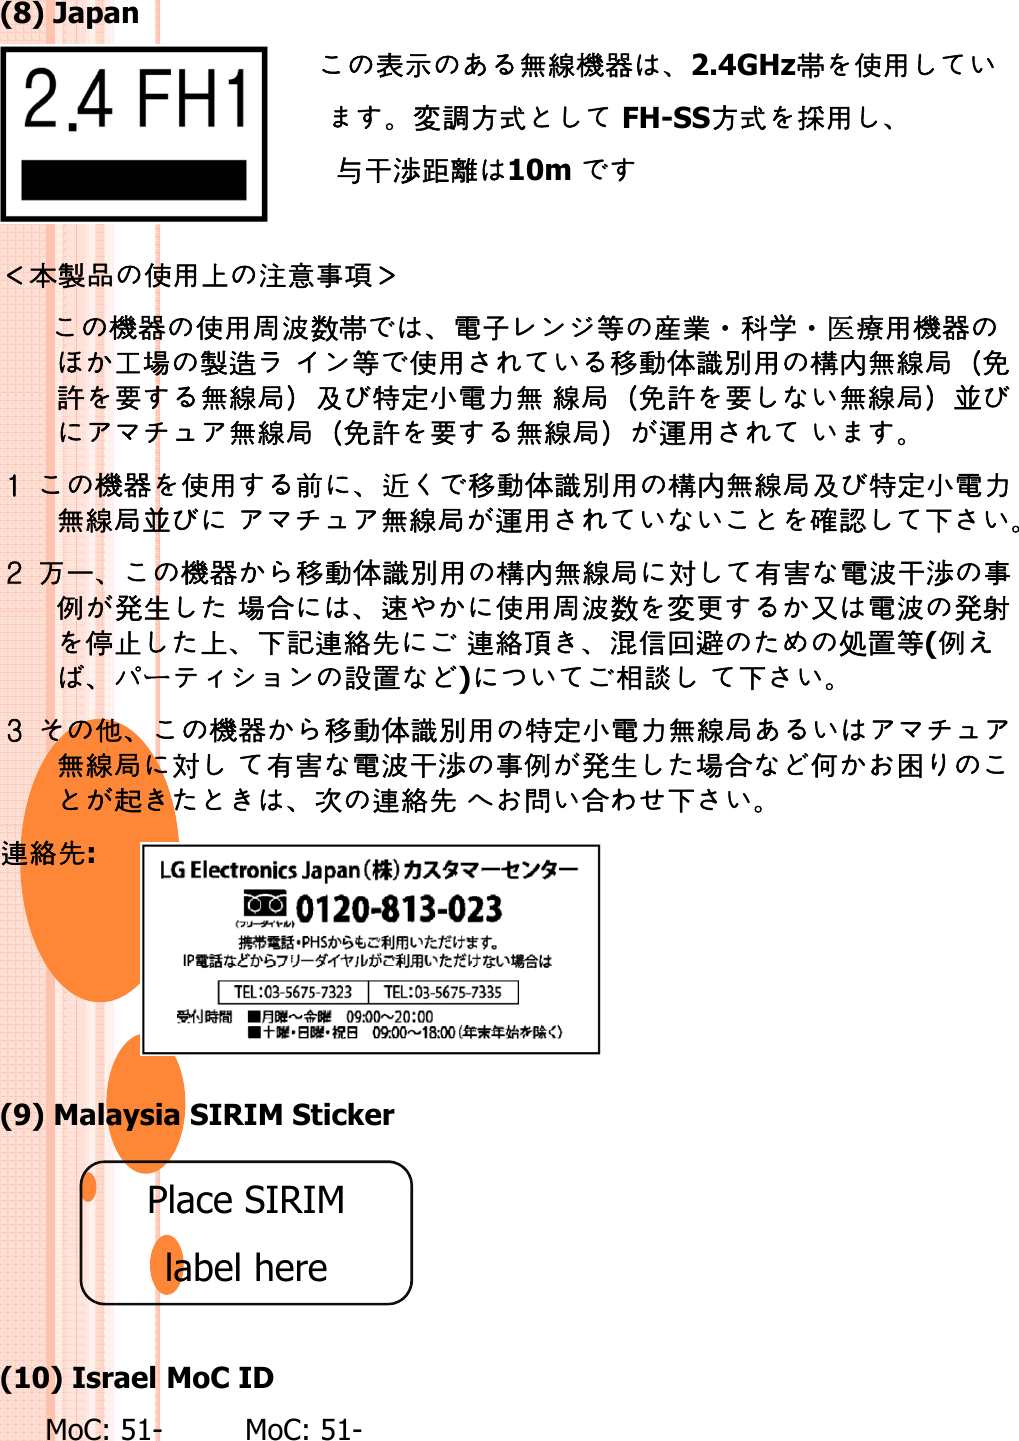 (8) Japan󷓨󶳾󶥹󶯨󶙂󶘭2.4GHz帯󶬧󶼰変󷇞󶧸󶴊 FH-SS󶧸󶴊󷌍󶼰与󶏘渉󶑍󶢾10m 与渉󶪈󷆰󷓭󶬧󶼰󶭾󷈘󷀚󶬢󷕍󶙂󶘭󶬧󶼰󷈎󷑾数帯󷅓󷂑󶞫󶭧󶷪・󶔣学・医󶡭󶼰󶙂󶘭󶔓󷃂󷆰󷇡 󶞫󶬧󶼰󷀿󶞇󷳭󶴓󶩒󶼰󶖐内󶥹󶯨󶖱󶤡󷕳󶼕󶥹󶯨󶖱󶘞󷑵󷅲󶰯󷅓󶠈󶥹󶯨󶖱󶤡󷕳󶼕󶥹󶯨󶖱󷲴󷕳󶼕󶥹󶯨󶖱󶘞󷑵󷅲󶰯󷅓󶠈󶥹󶯨󶖱󶤡󷕳󶼕󶥹󶯨󶖱󷲴󶥹󶯨󶖱󶤡󷕳󶼕󶥹󶯨󶖱󶽫󶼰  󶙂󶘭󶬧󶼰󷄳󶘌󷀿󶞇󷳭󶴓󶩒󶼰󶖐内󶥹󶯨󶖱󶘞󷑵󷅲󶰯󷅓󶠈󶥹󶯨󶖱󷲴 󶥹󶯨󶖱󶽫󶼰󷘒󷁩󷔇 󶣠󷁯󶙂󶘭󷀿󶞇󷳭󶴓󶩒󶼰󶖐内󶥹󶯨󶖱対󶾽󷕔󷅓󷑾󶏘渉󶬢󶠹発󶮦󷃂󷔶󶱘󶬧󶼰󷈎󷑾数変󶒠󶼽󷅓󷑾発󶬴󶠹発󶮦󷃂󷔶󶱘󶬧󶼰󷈎󷑾数変󶒠󶼽󷅓󷑾発󶬴󷅮󷉧󶭾󷔇󶙜󶠙󶞽󶯙 󶠙󶞽󷆠󷗰󶴙󷙄󷓹処󷏹󶞫(󶠹ー󶰀󷏹)󶮓󶜠 󷔇 󷐔󶙂󶘭󷀿󶞇󷳭󶴓󶩒󶼰󷑵󷅲󶰯󷅓󶠈󶥹󶯨󶖱󶥹󶯨󶖱対 󶾽󷕔󷅓󷑾󶏘渉󶬢󶠹発󶮦󷃂󷔶󷔈󶔁󶙟󷋅󶠙󶞽󶯙 󶦉󷔶󷔇󶠙󶞽󶯙:(9) Malaysia SIRIM StickerPlace SIRIM lblh(10) Israel MoC ID MoC: 51- MoC: 51-label here